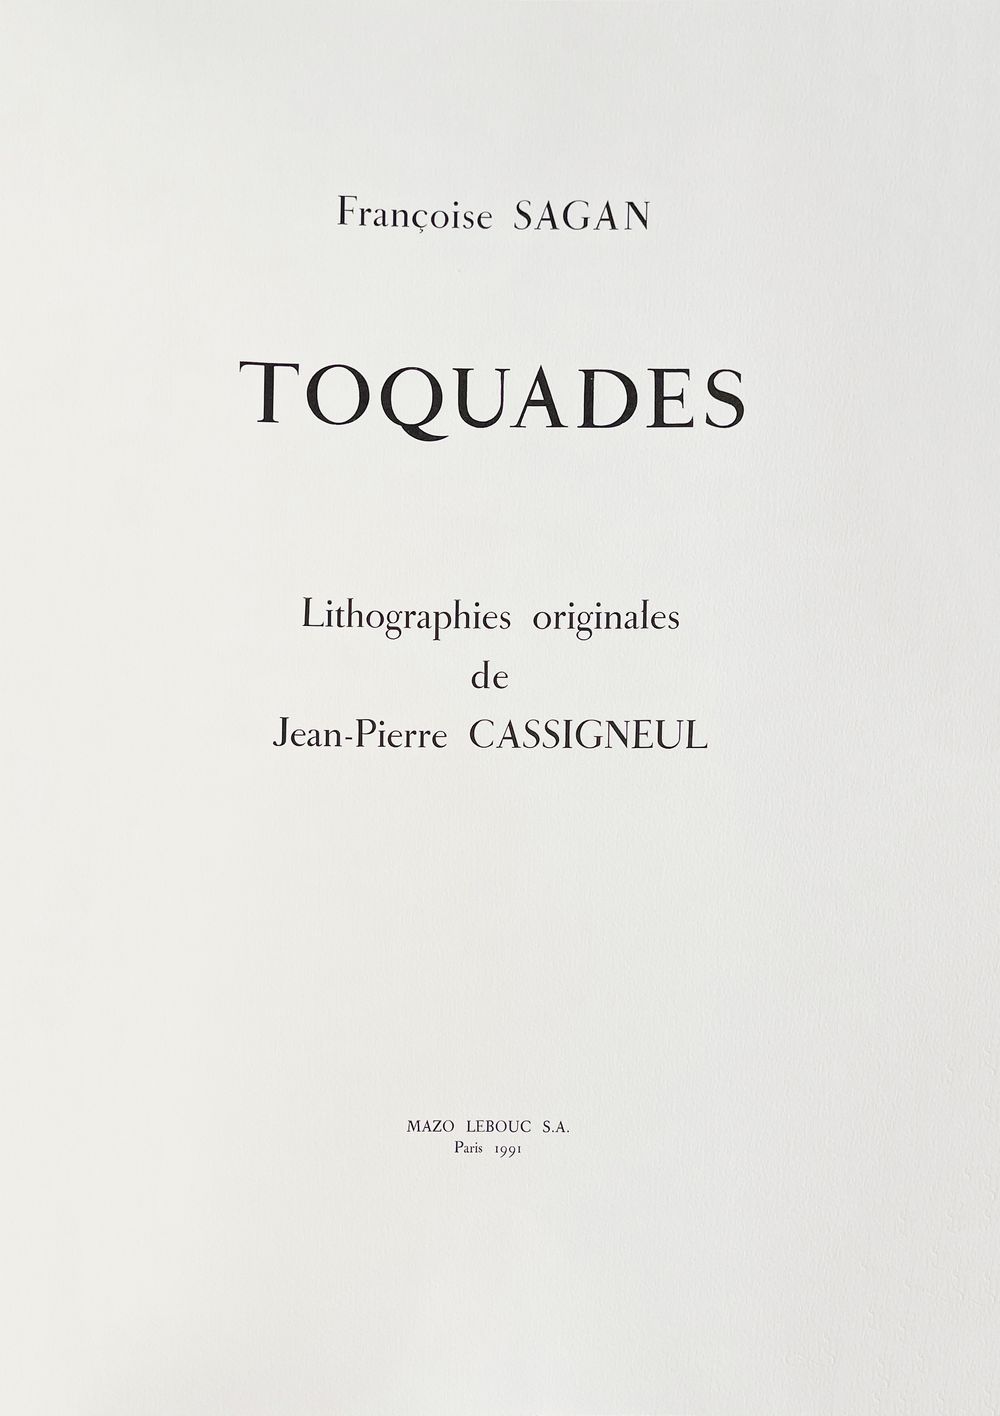 Toquades - album complet (8 lithographies) signé Françoise Sagan